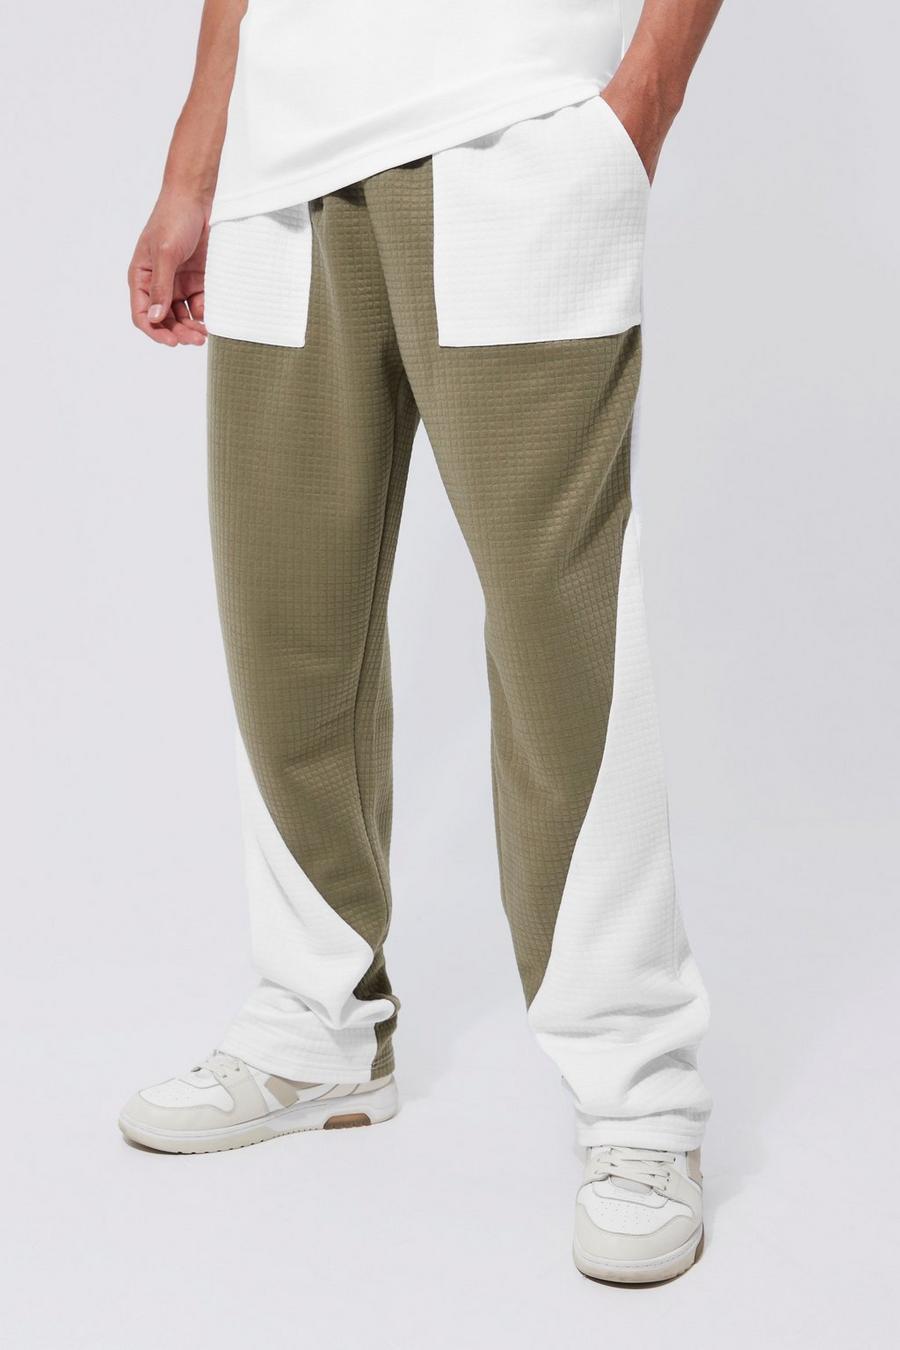 חאקי kaki מכנסי טרנינג מאריג ואפל קולור בלוק בגזרת רגל ישרה, לגברים גבוהים